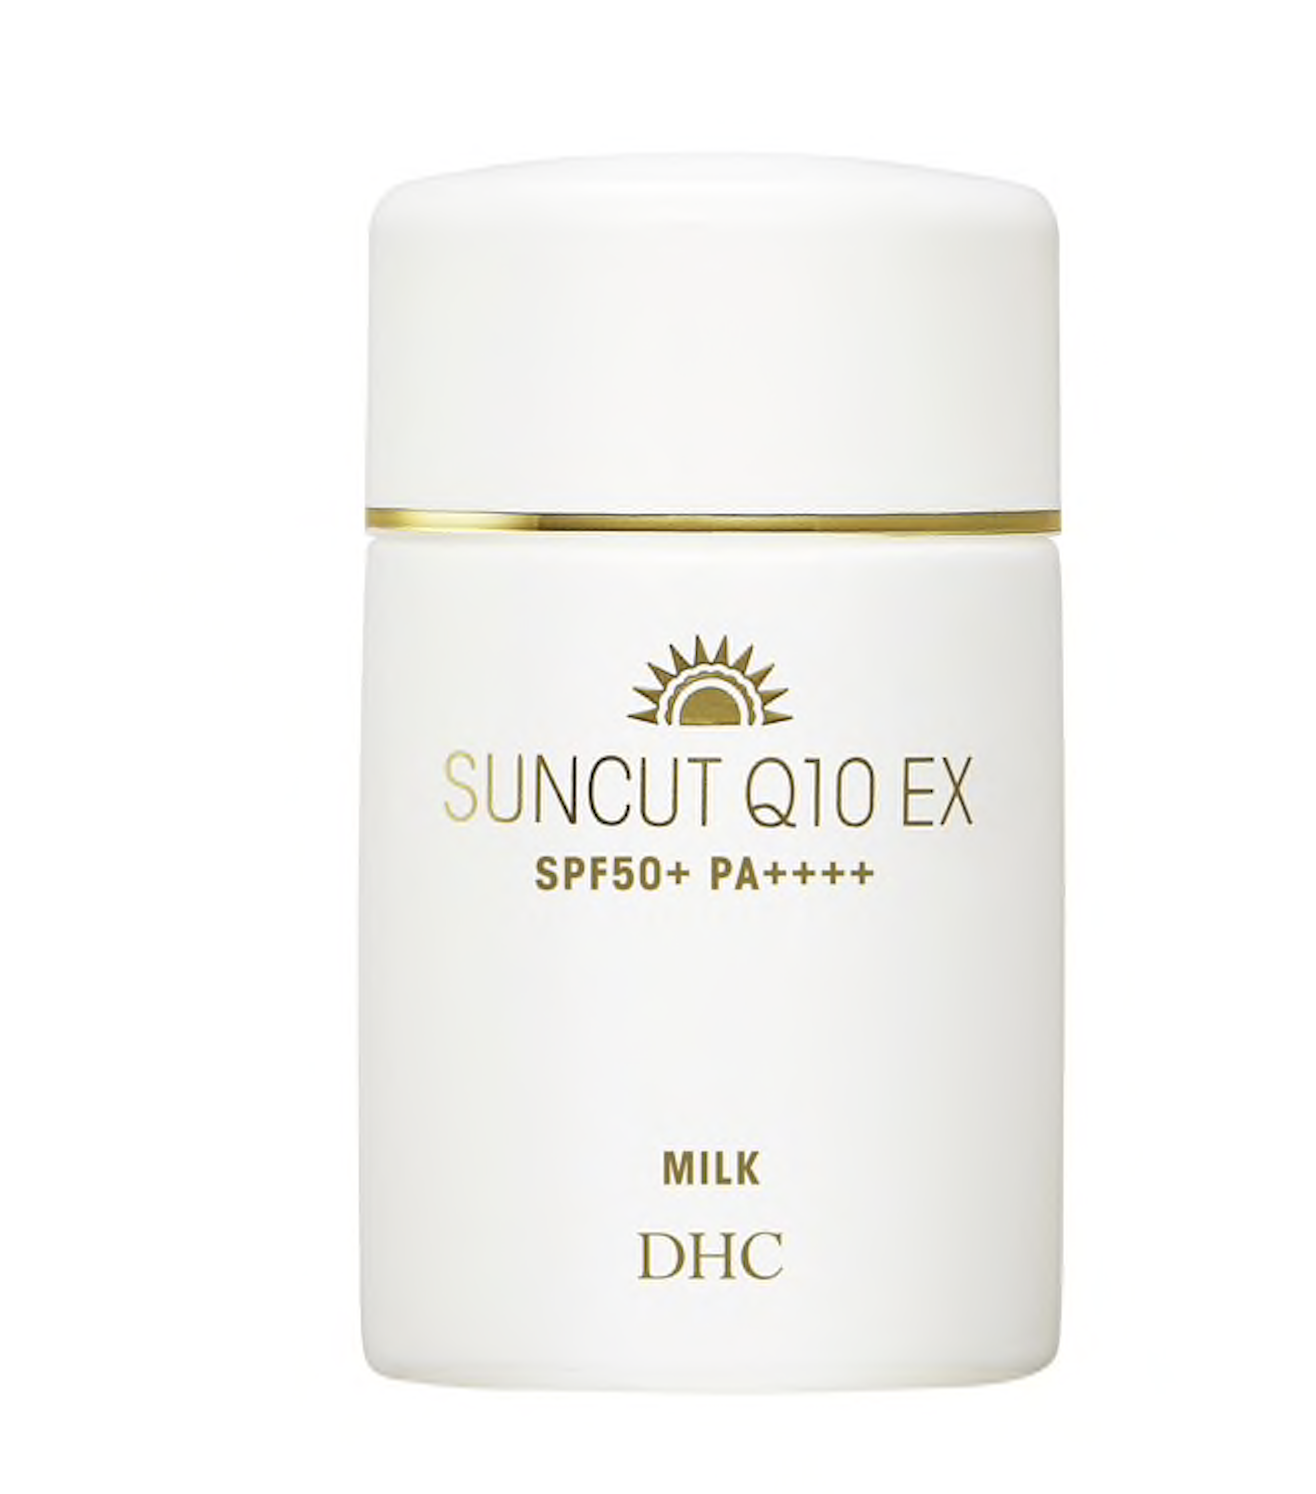 DHC Suncut Q10 EX Milk 防曬